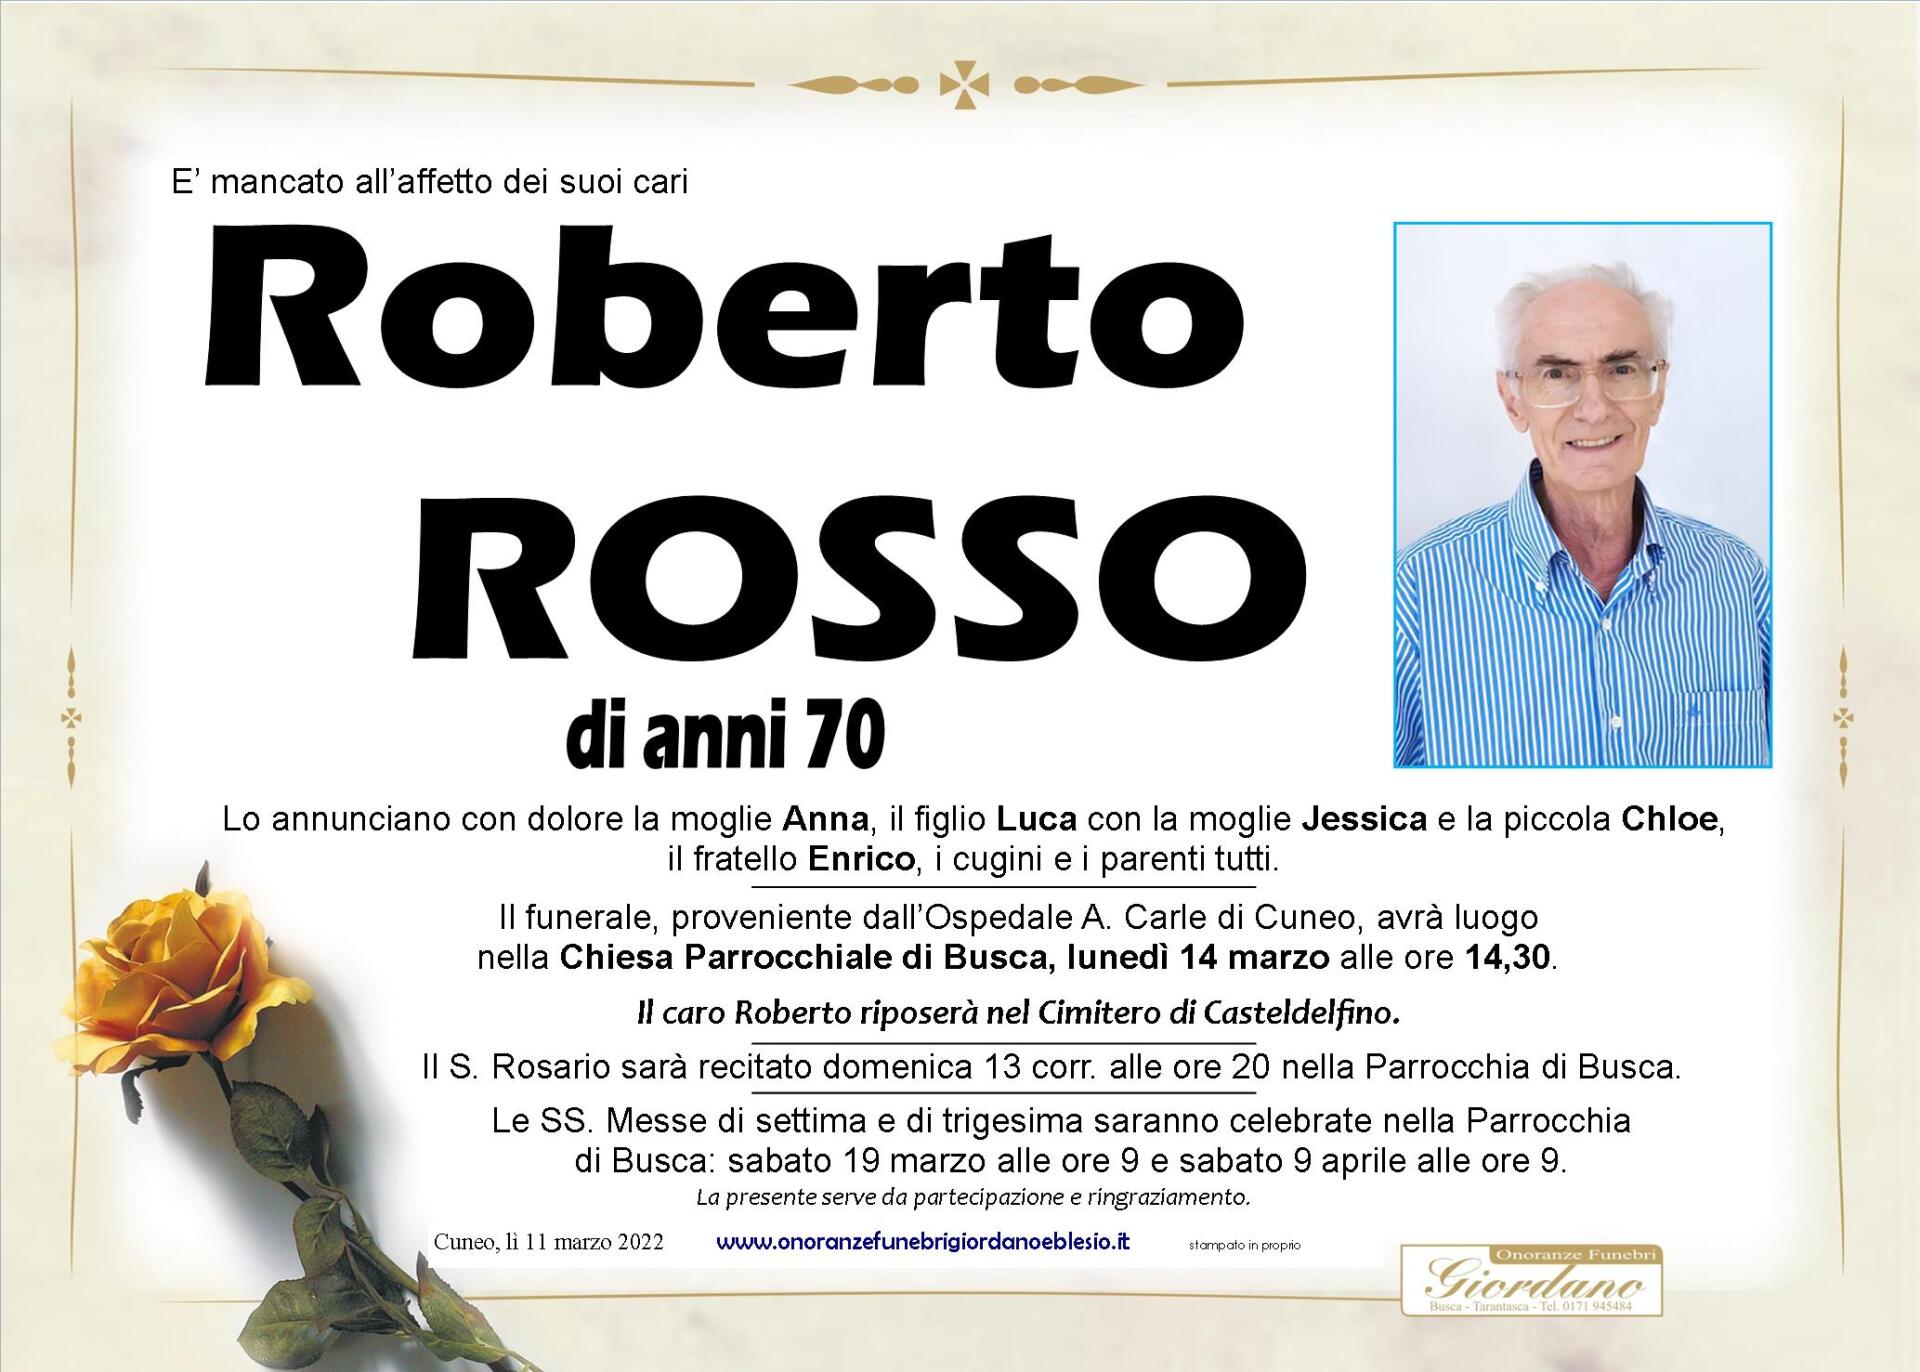 necrologio ROSSO Roberto